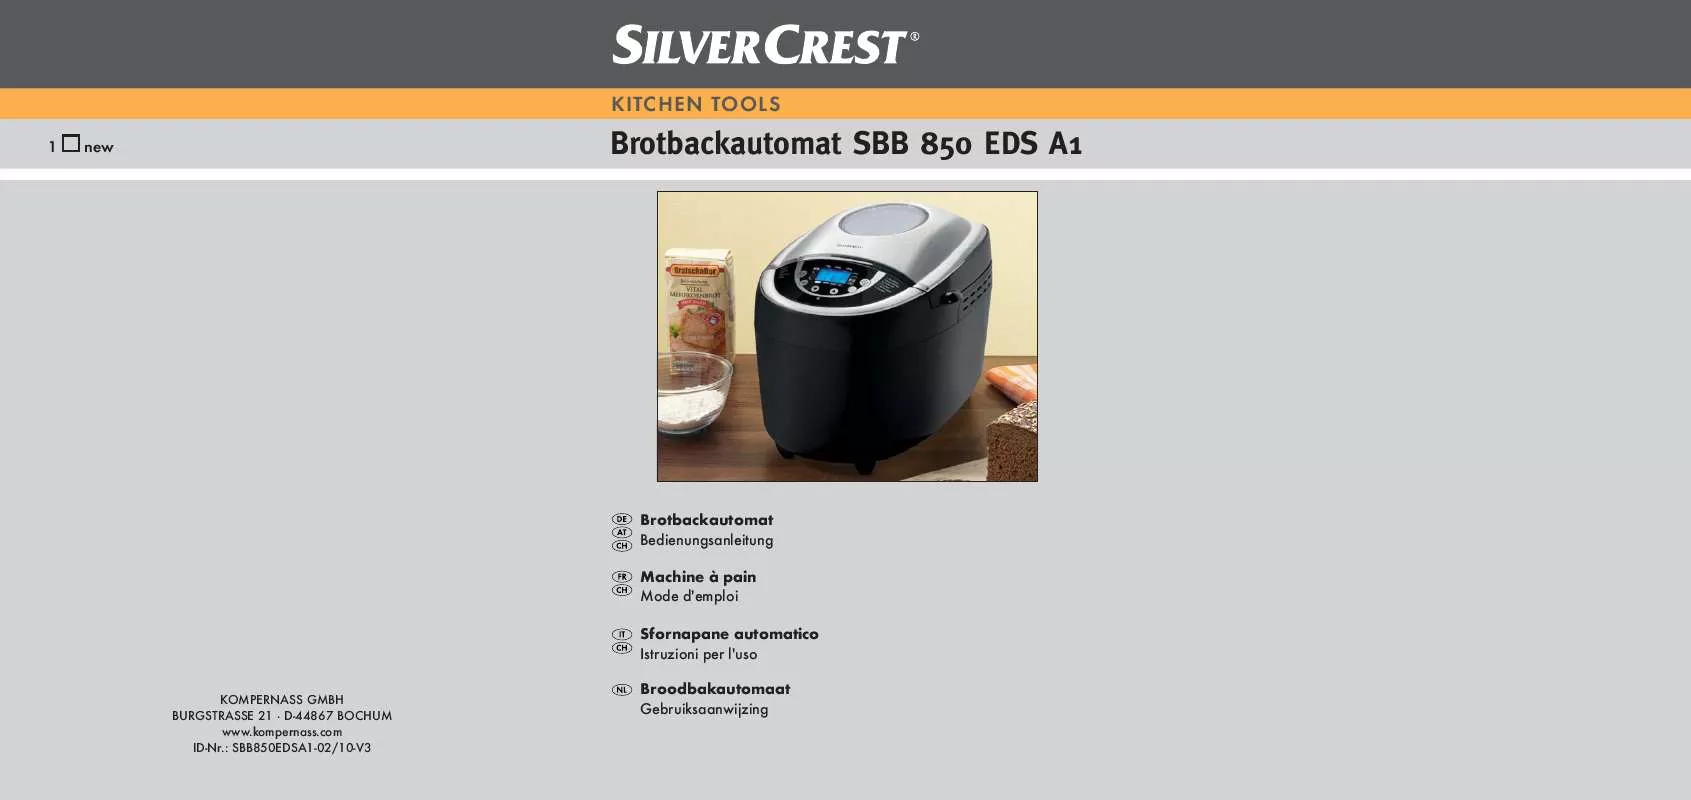 Mode d'emploi SILVERCREST SBB 850 EDS A1 BREAD MAKER